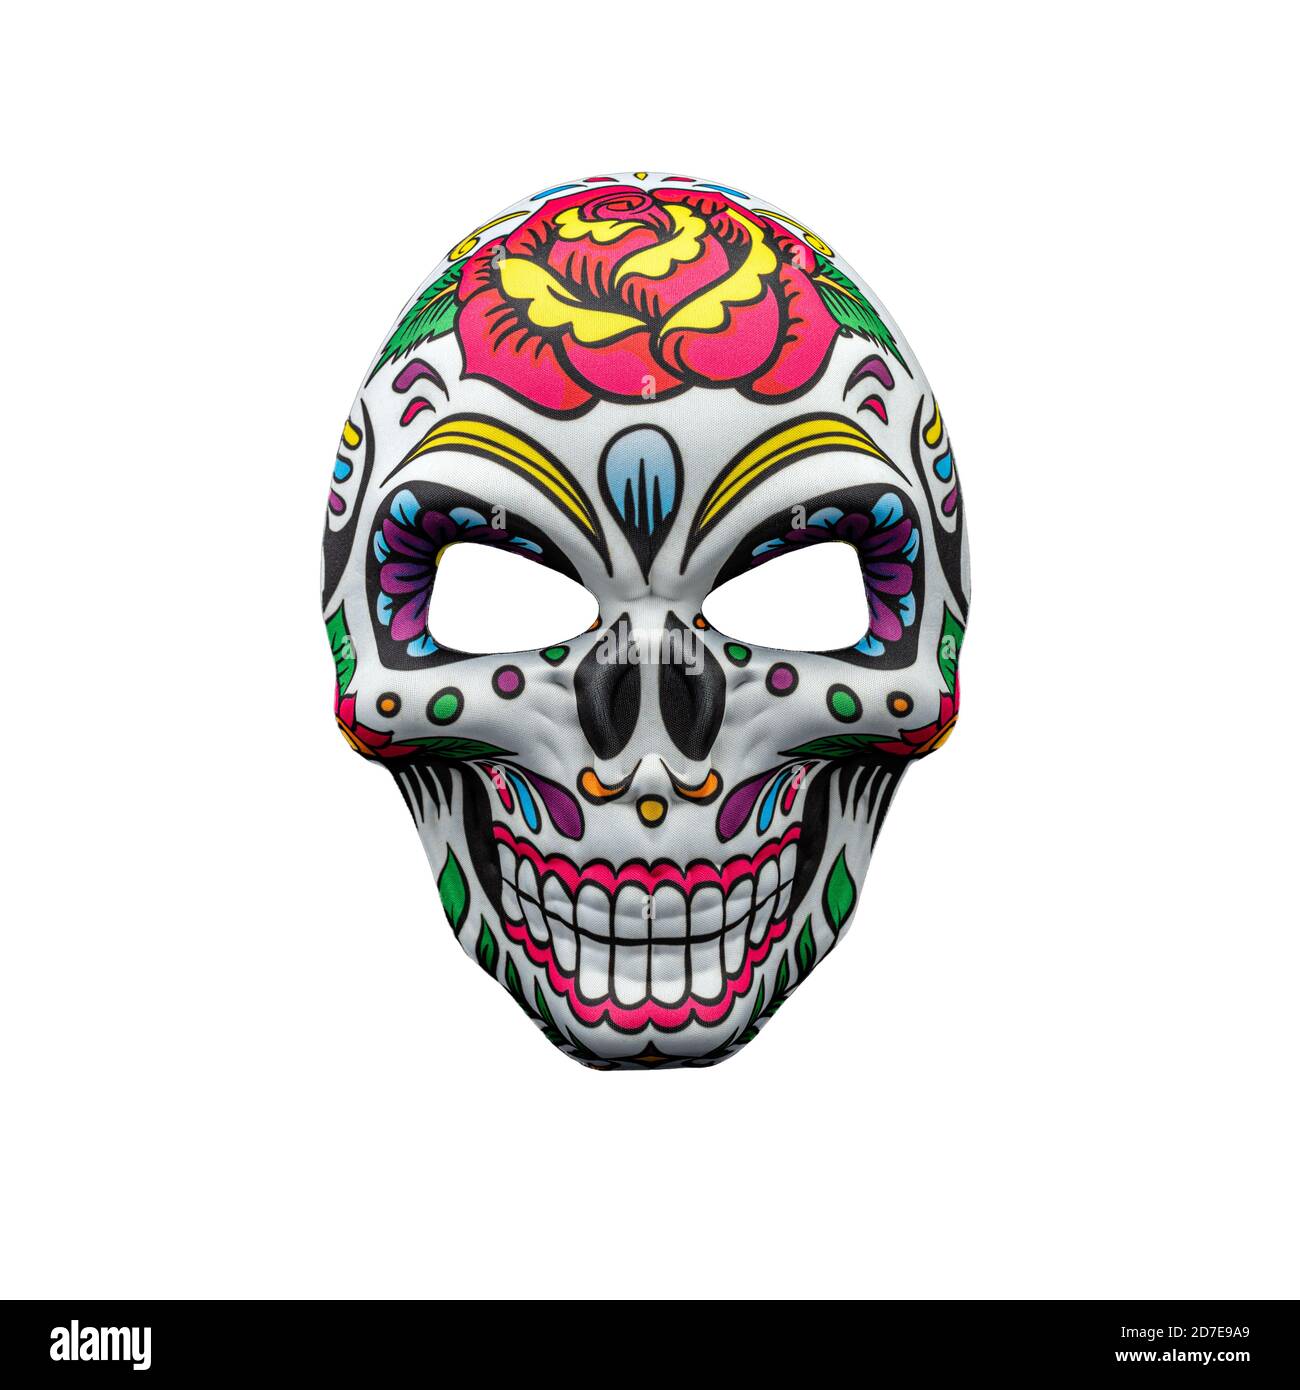 Masque d'Halloween représentant un crâne mexicain traditionnel avec un motif floral coloré isolé sur un fond blanc. Banque D'Images